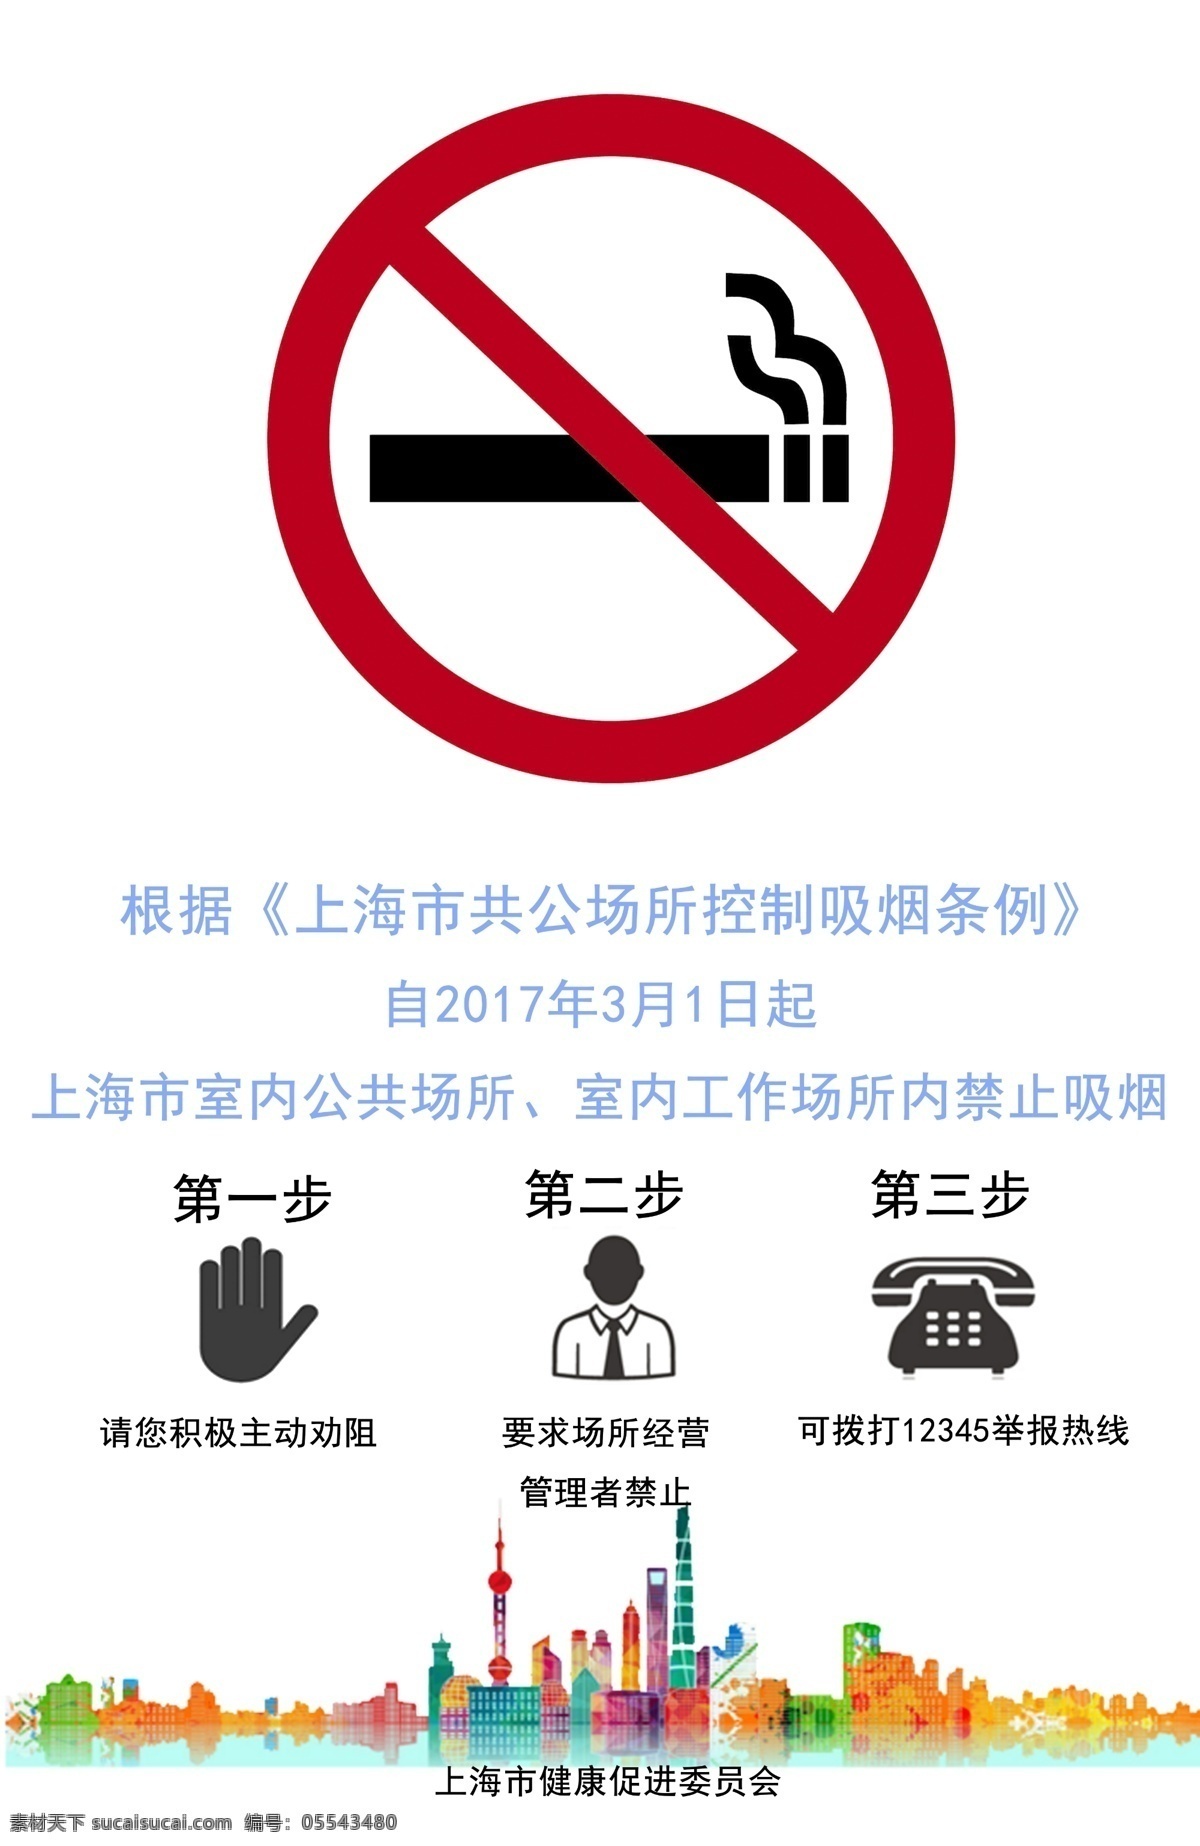 上海控烟海报 上海控烟 禁烟 公司禁烟宣传 学校禁烟 医院禁烟 控烟原图